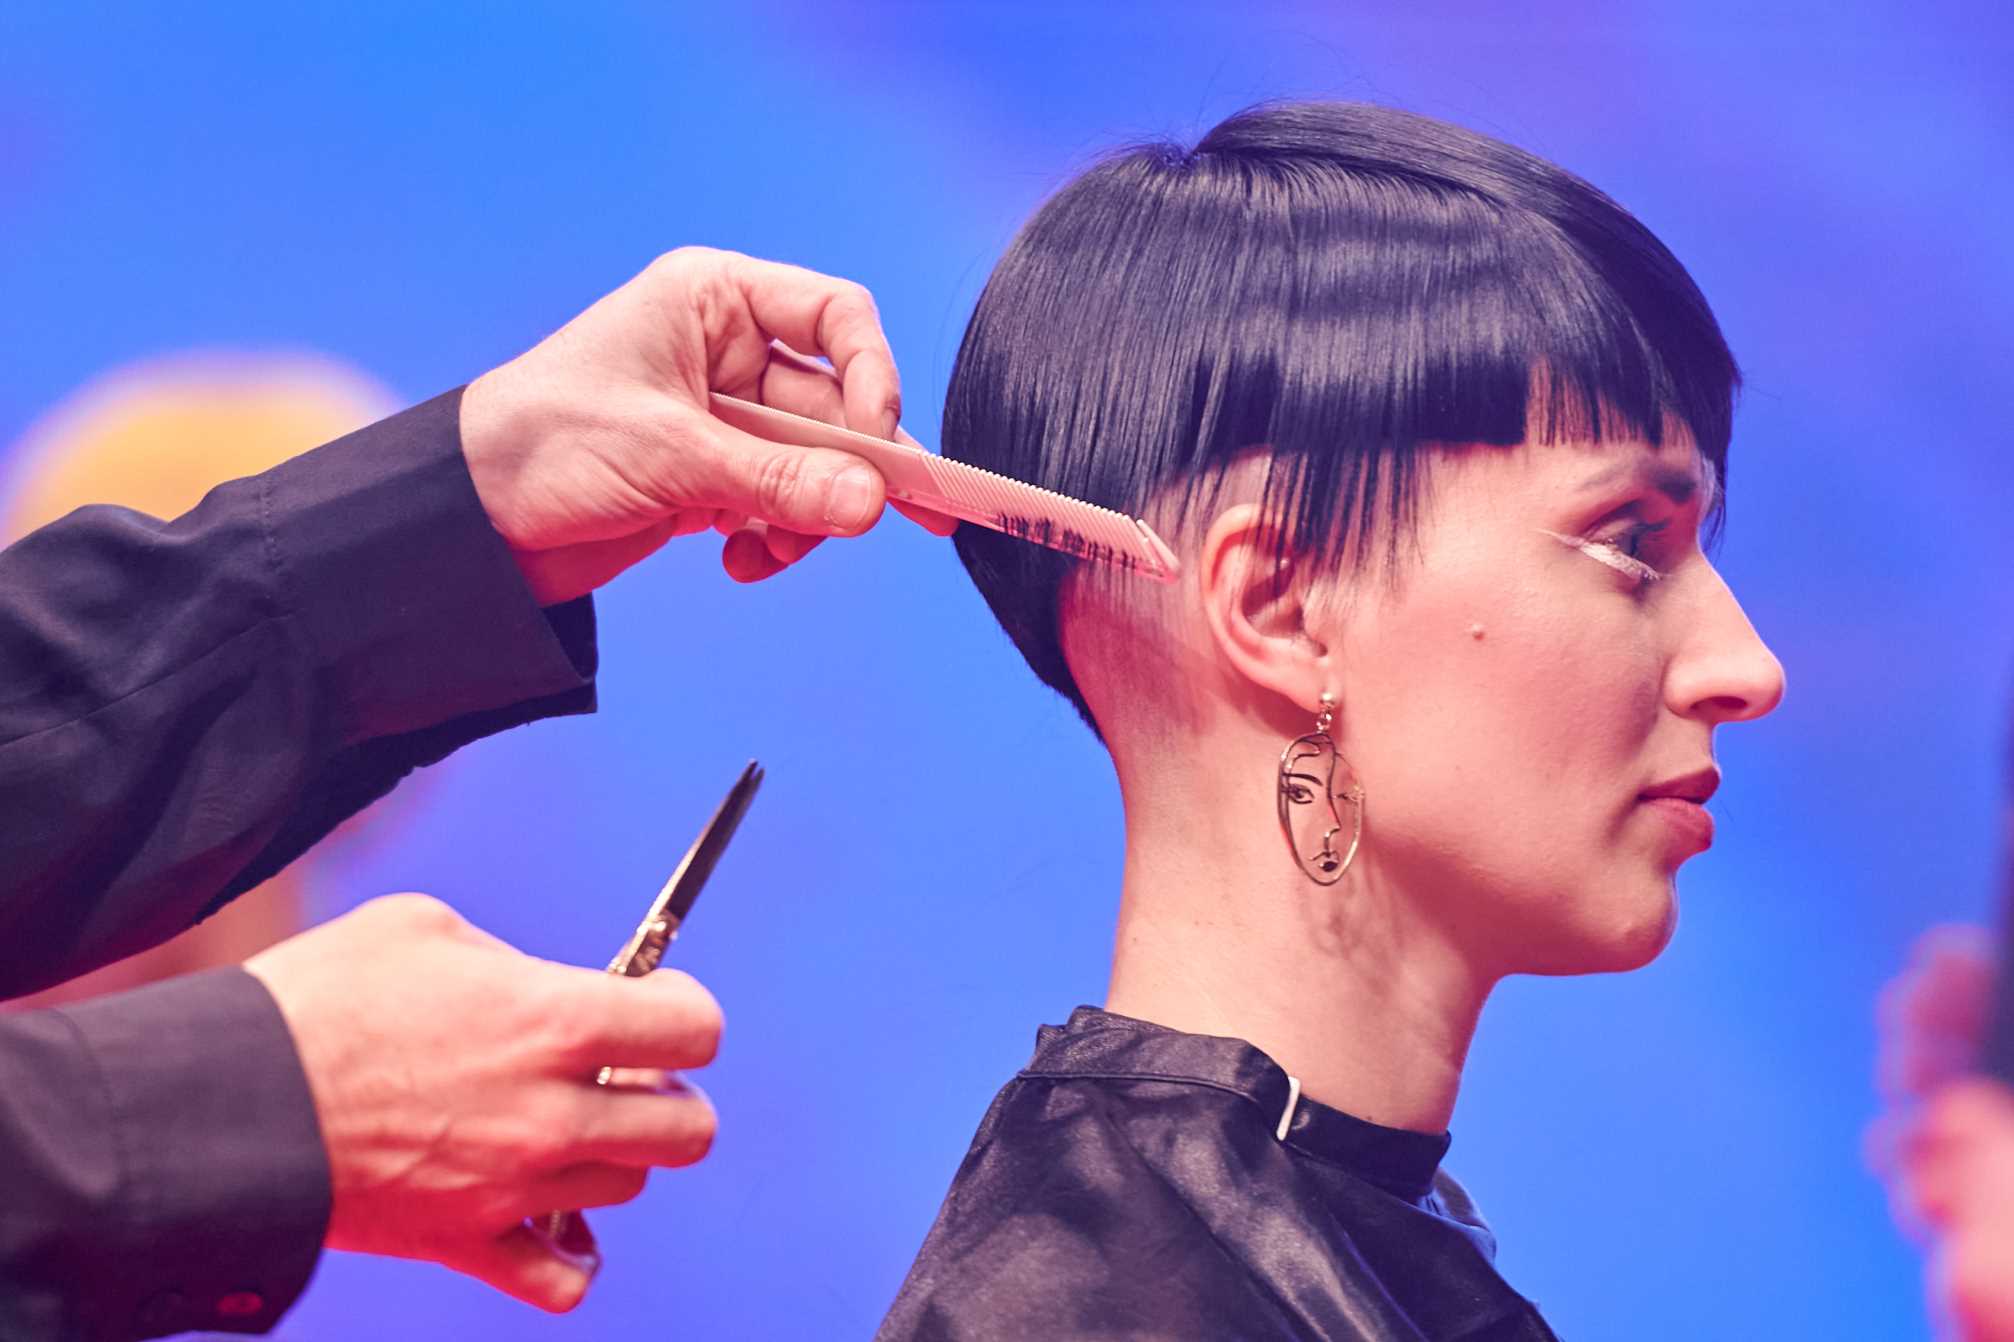 Hairstyle News Festival predstavlja najnovije frizerske trendove i inovacije